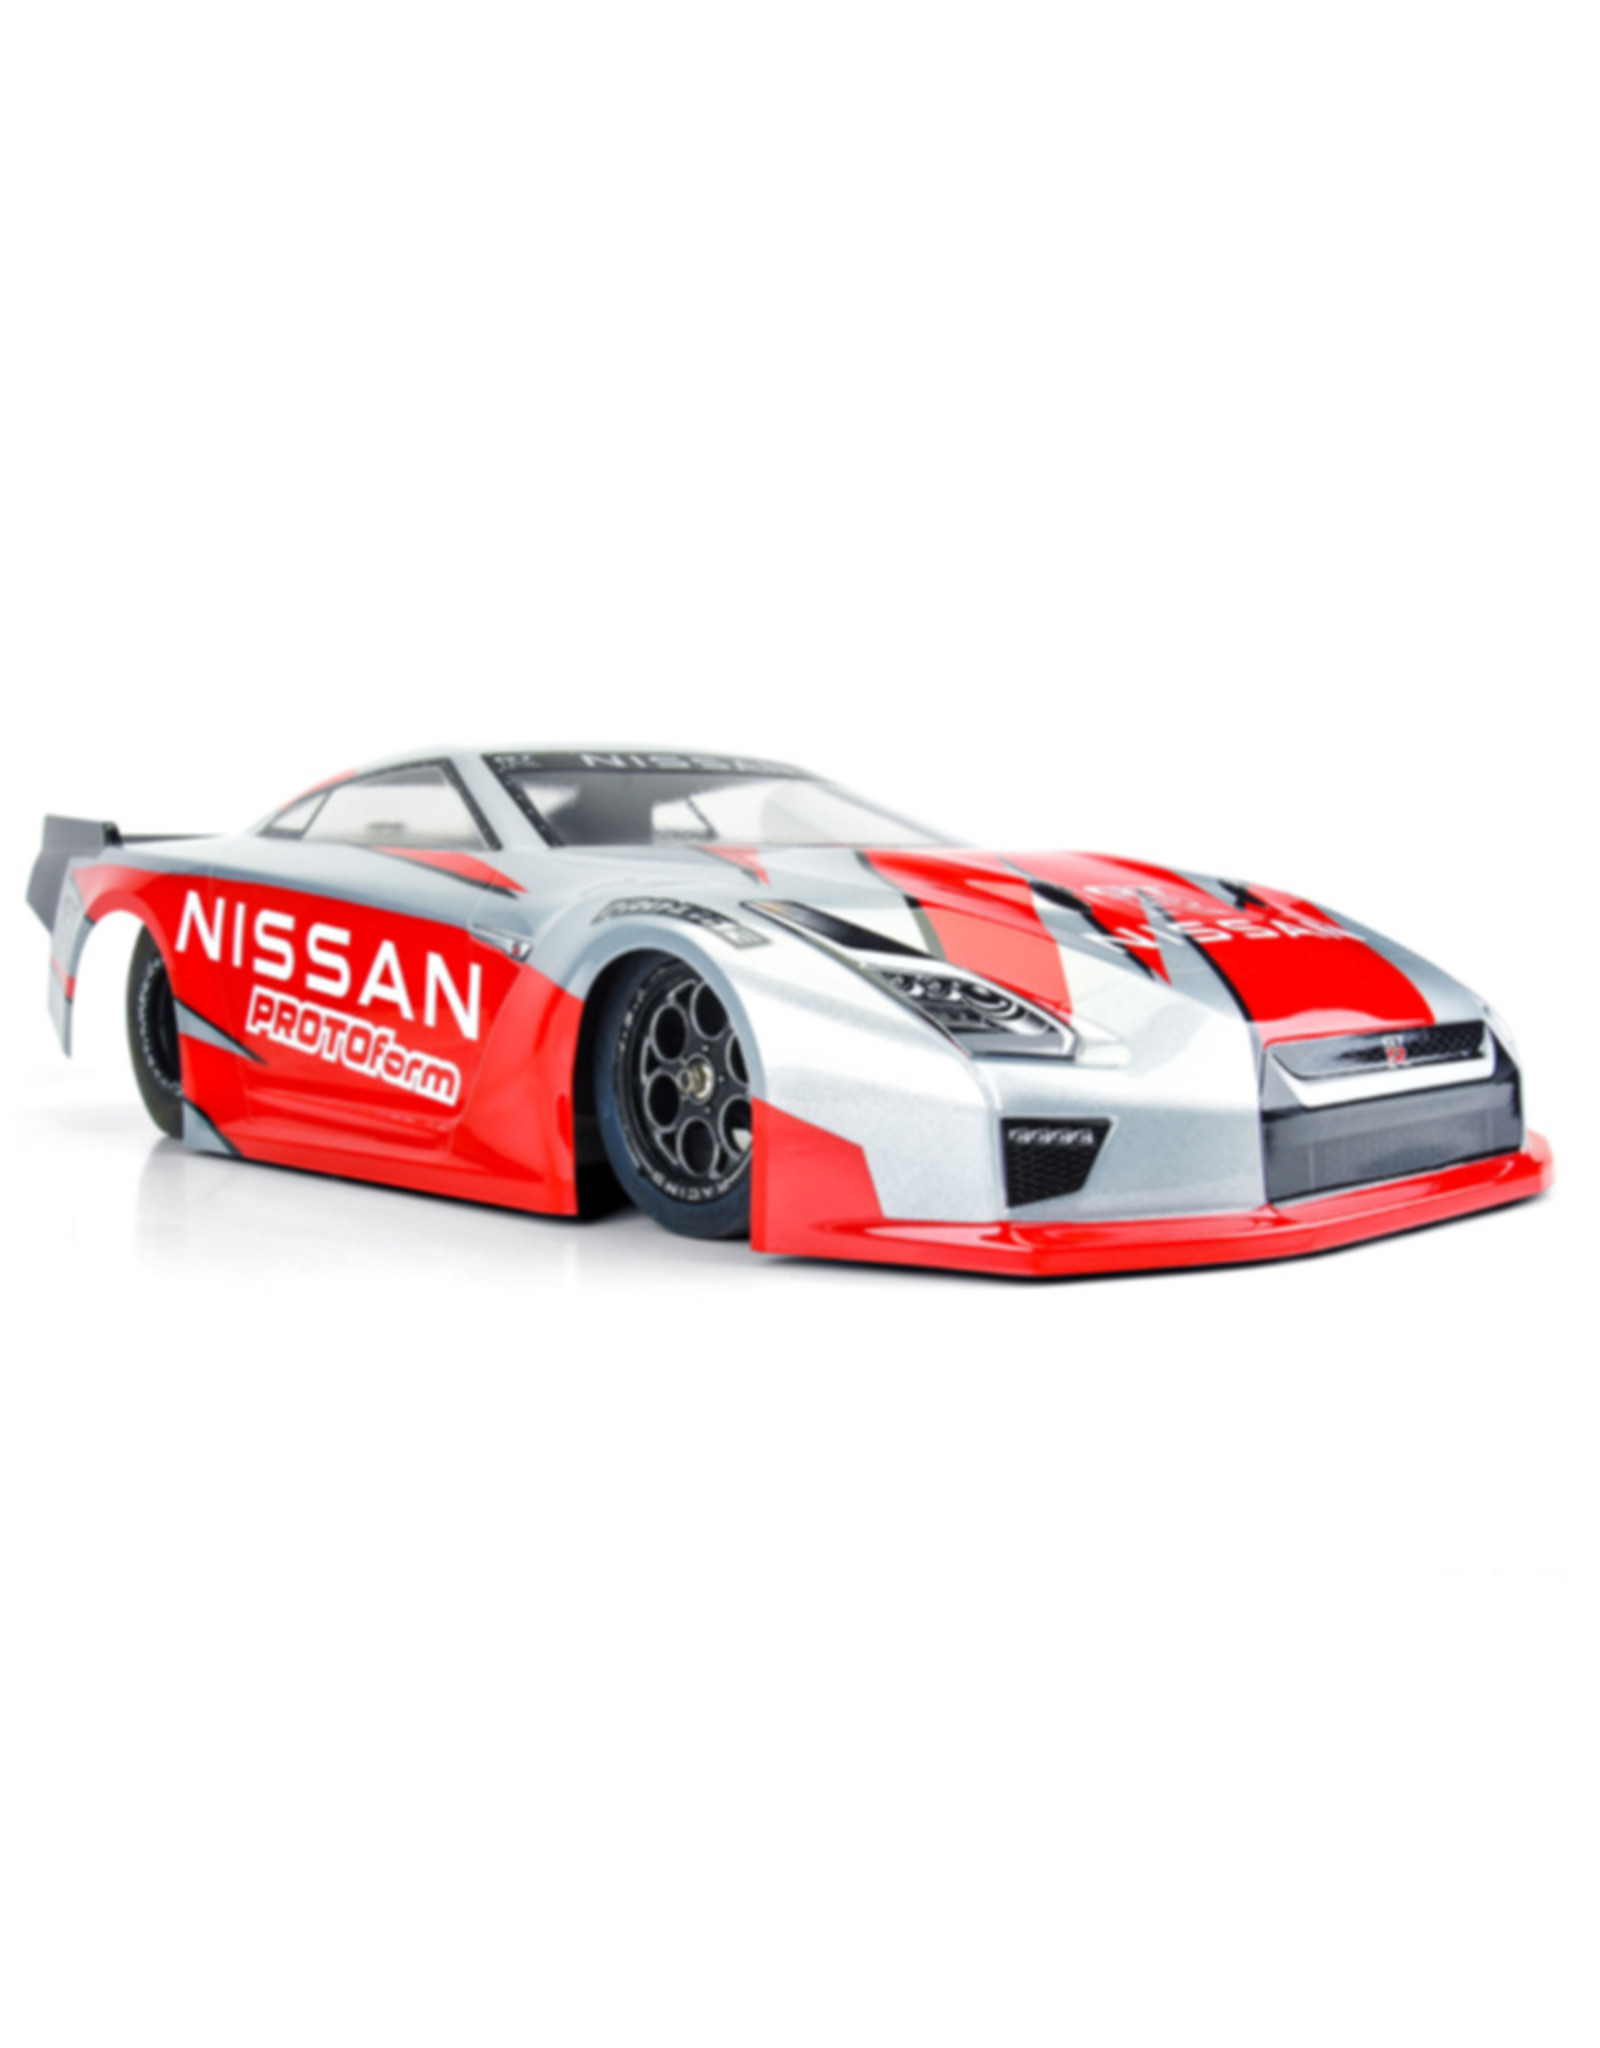 Protoform PRM158500   1/10 Nissan GT-R R35 Clear Body: Losi 22S Drag Car